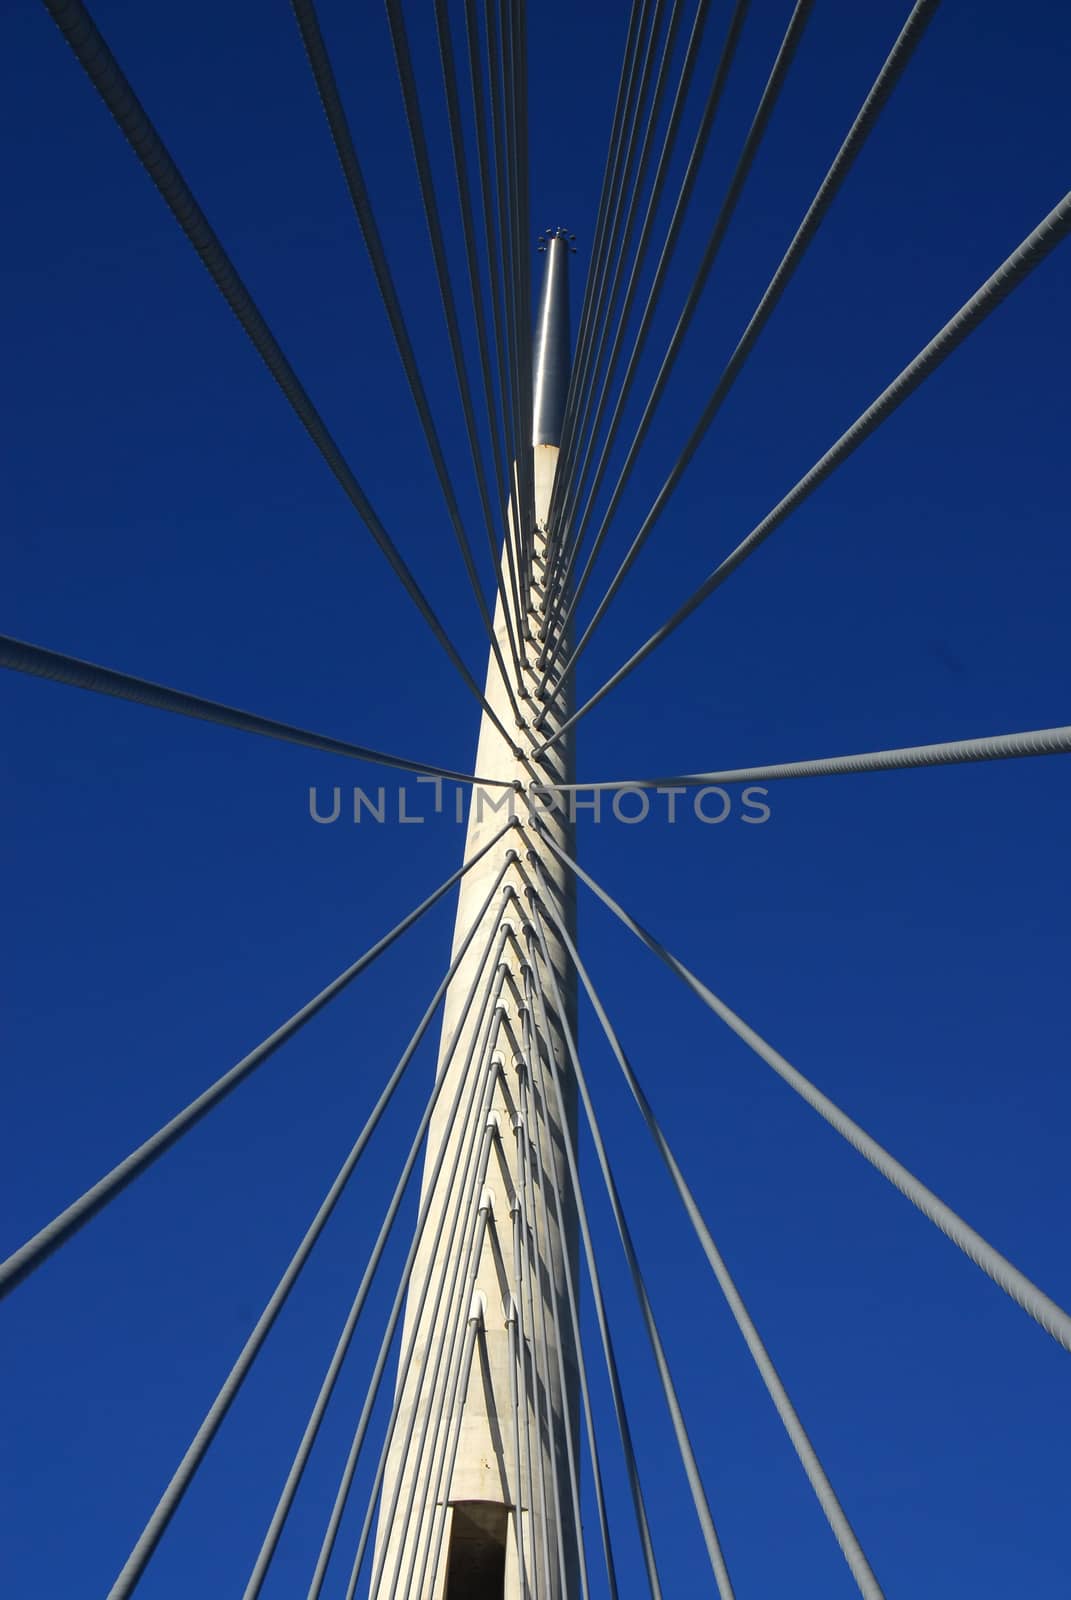 Details of Ada bridge tower in Belgrade, Serbia by simply